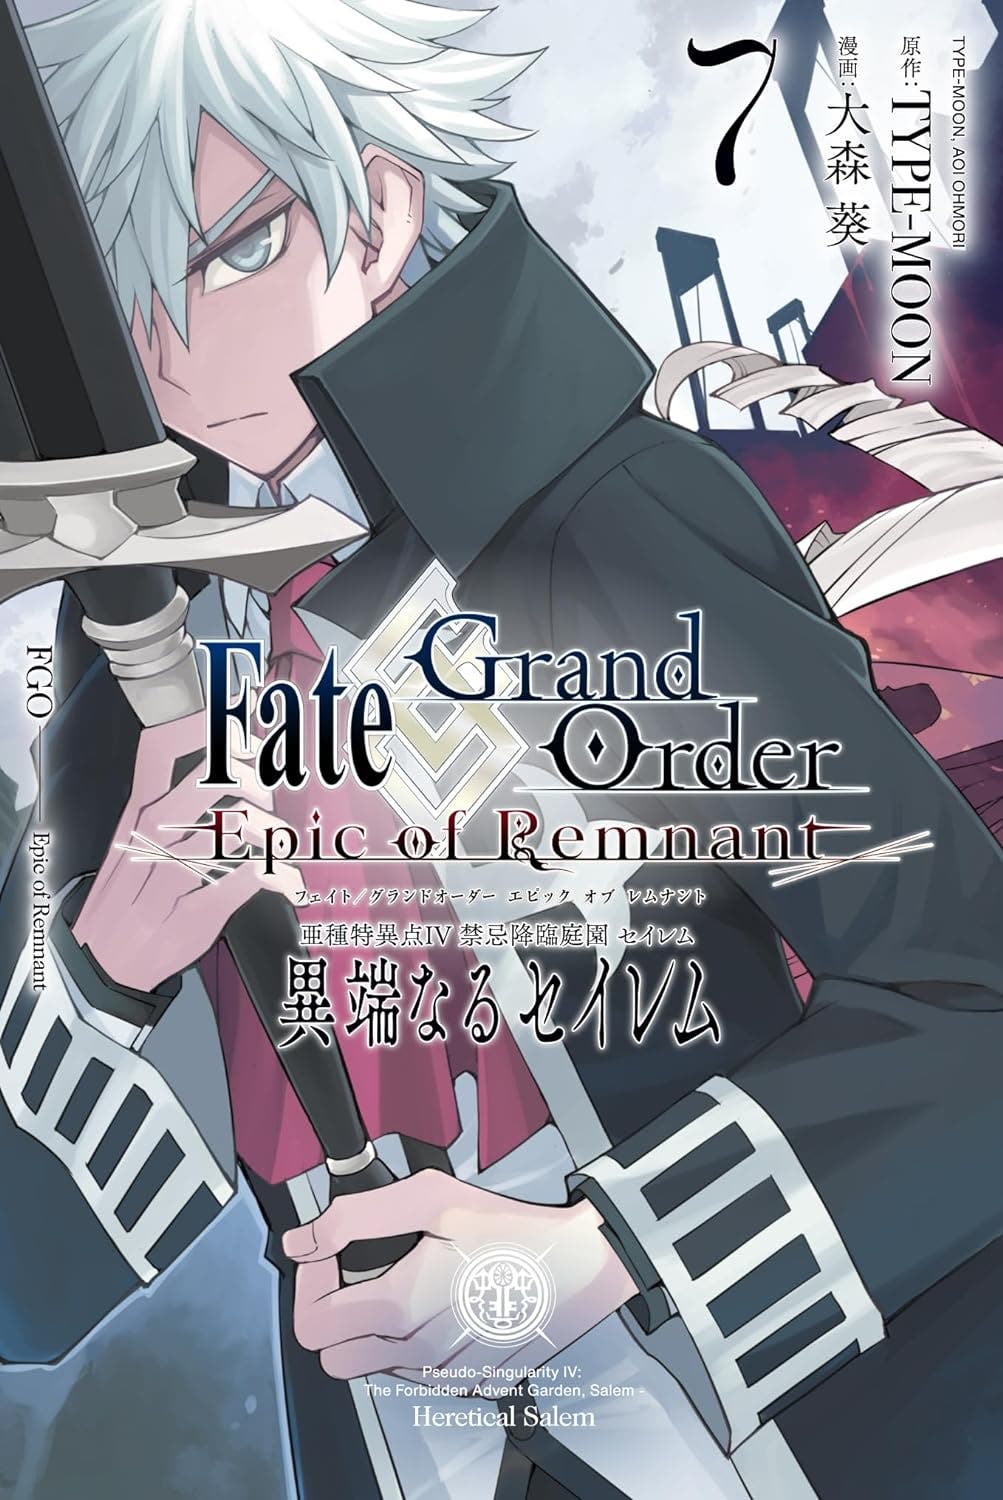 【書籍】Fate/Grand Order -Epic of Remnant- 亜種特異点Ⅳ 禁忌降臨庭園 セイレム 異端なるセイレム (7) (REXコミックス)が好評発売中